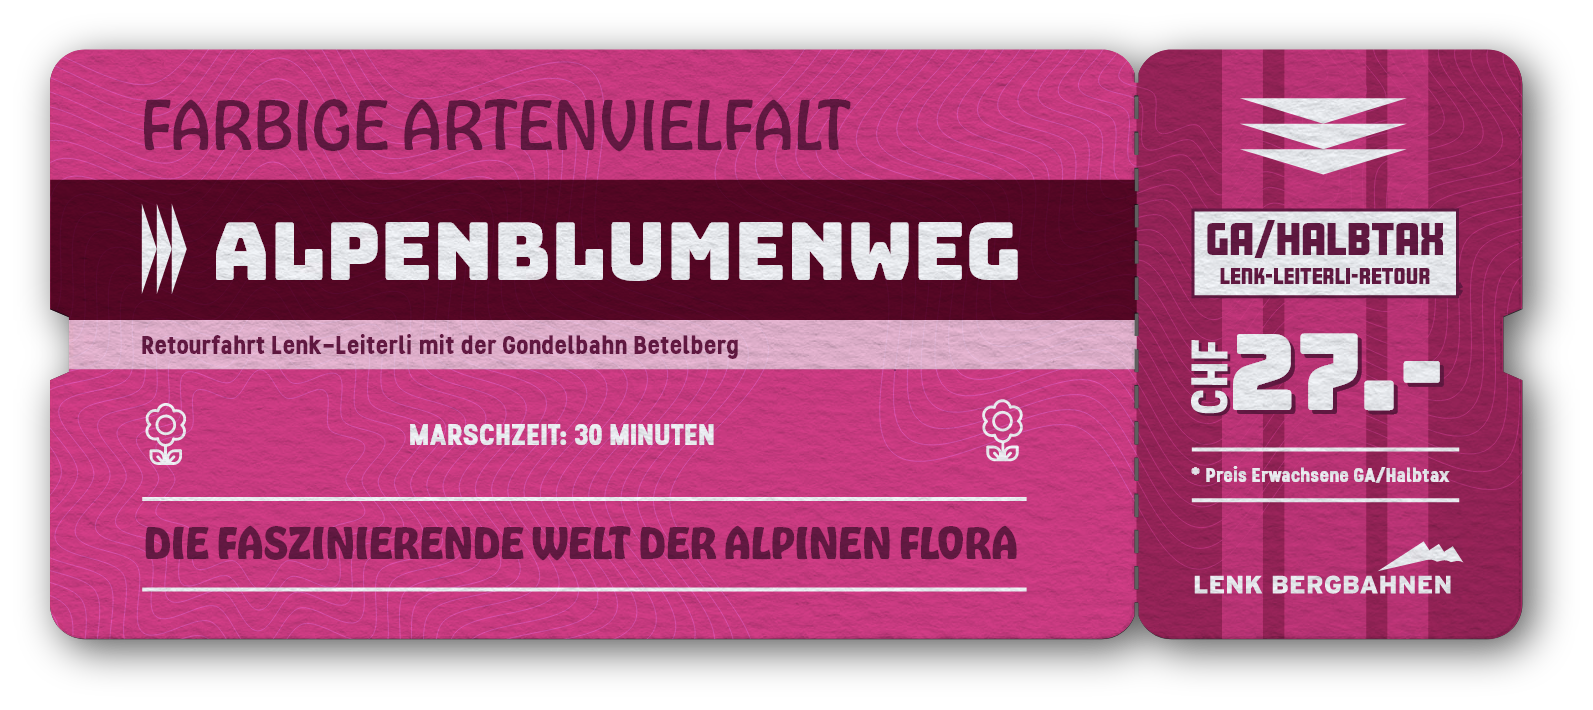 Ticket Alpenblumenweg Betelberg